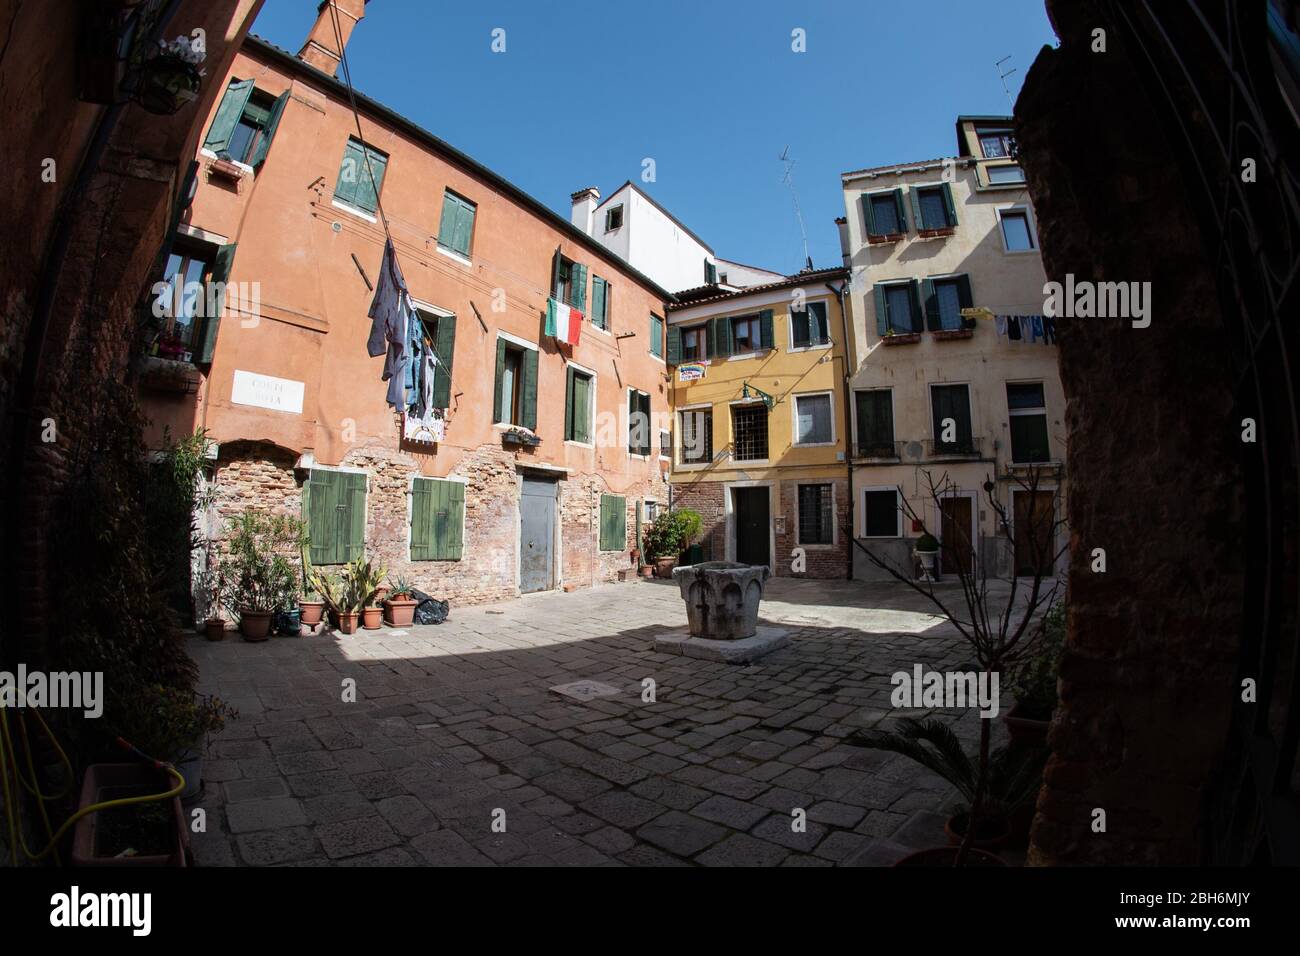 VENEZIA, ITALIA - APRILE 2020: Una piazza privata vuota con bandiera italiana durante il blocco nazionale per la pandemia Covid-19. Foto Stock